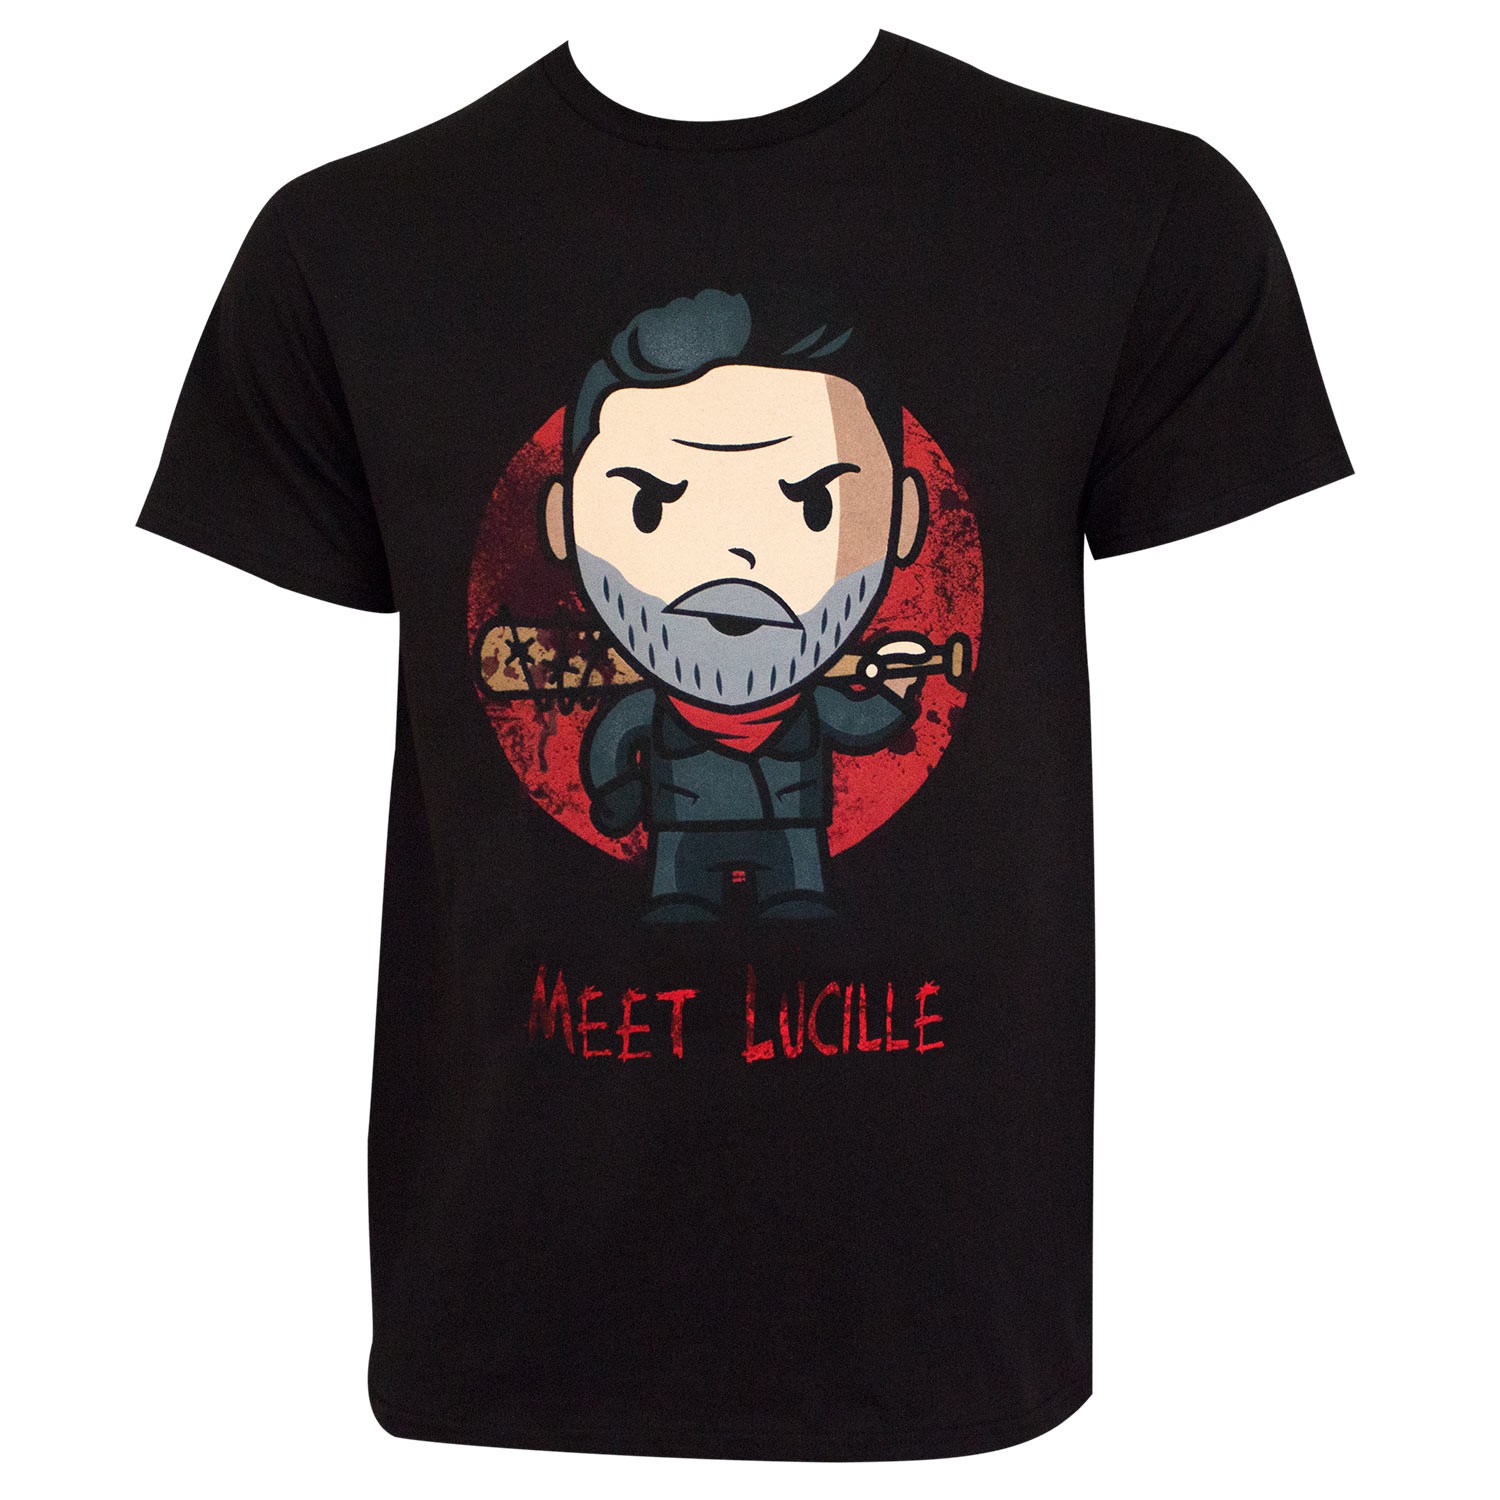 The Walking Dead Meet Lucille Cartoon Black Tee Shirt